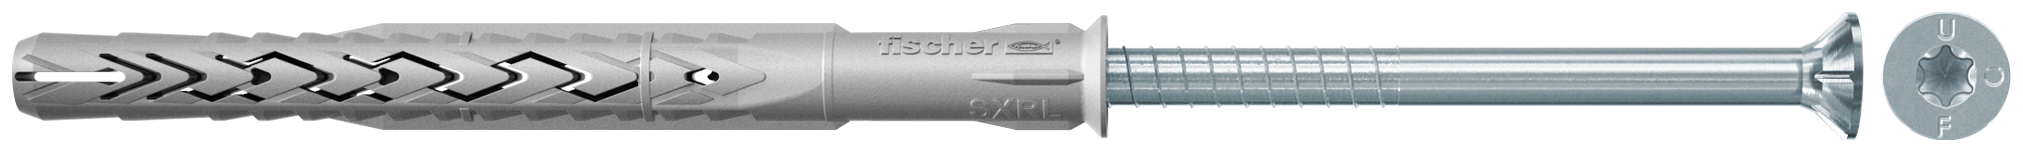 fischer Tasselli prolungati SXRL 10X100 T (1 Pz.) Tassello prolungato in nylon con marcatura CE con vite premontata T.S.P. impronta torx.